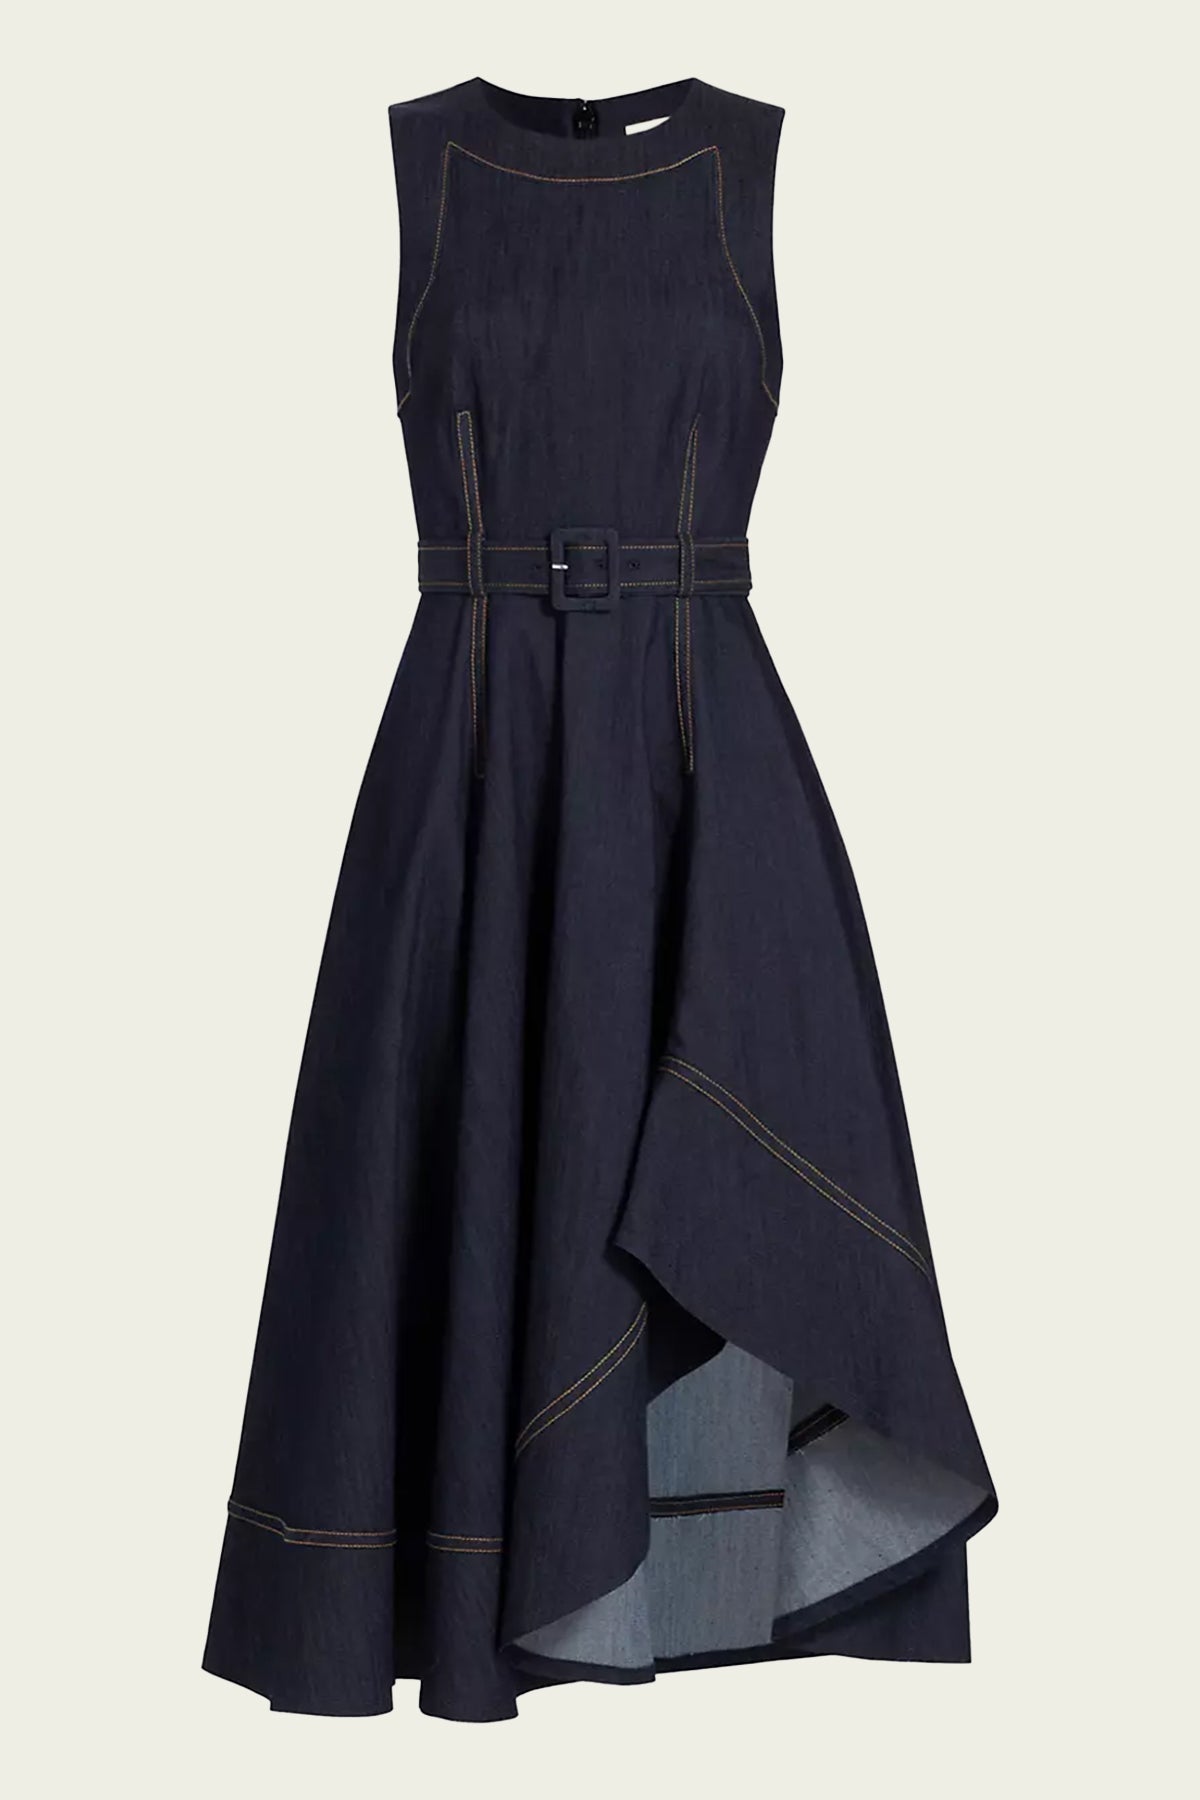 Zelda Dress in Indigo - shop-olivia.com